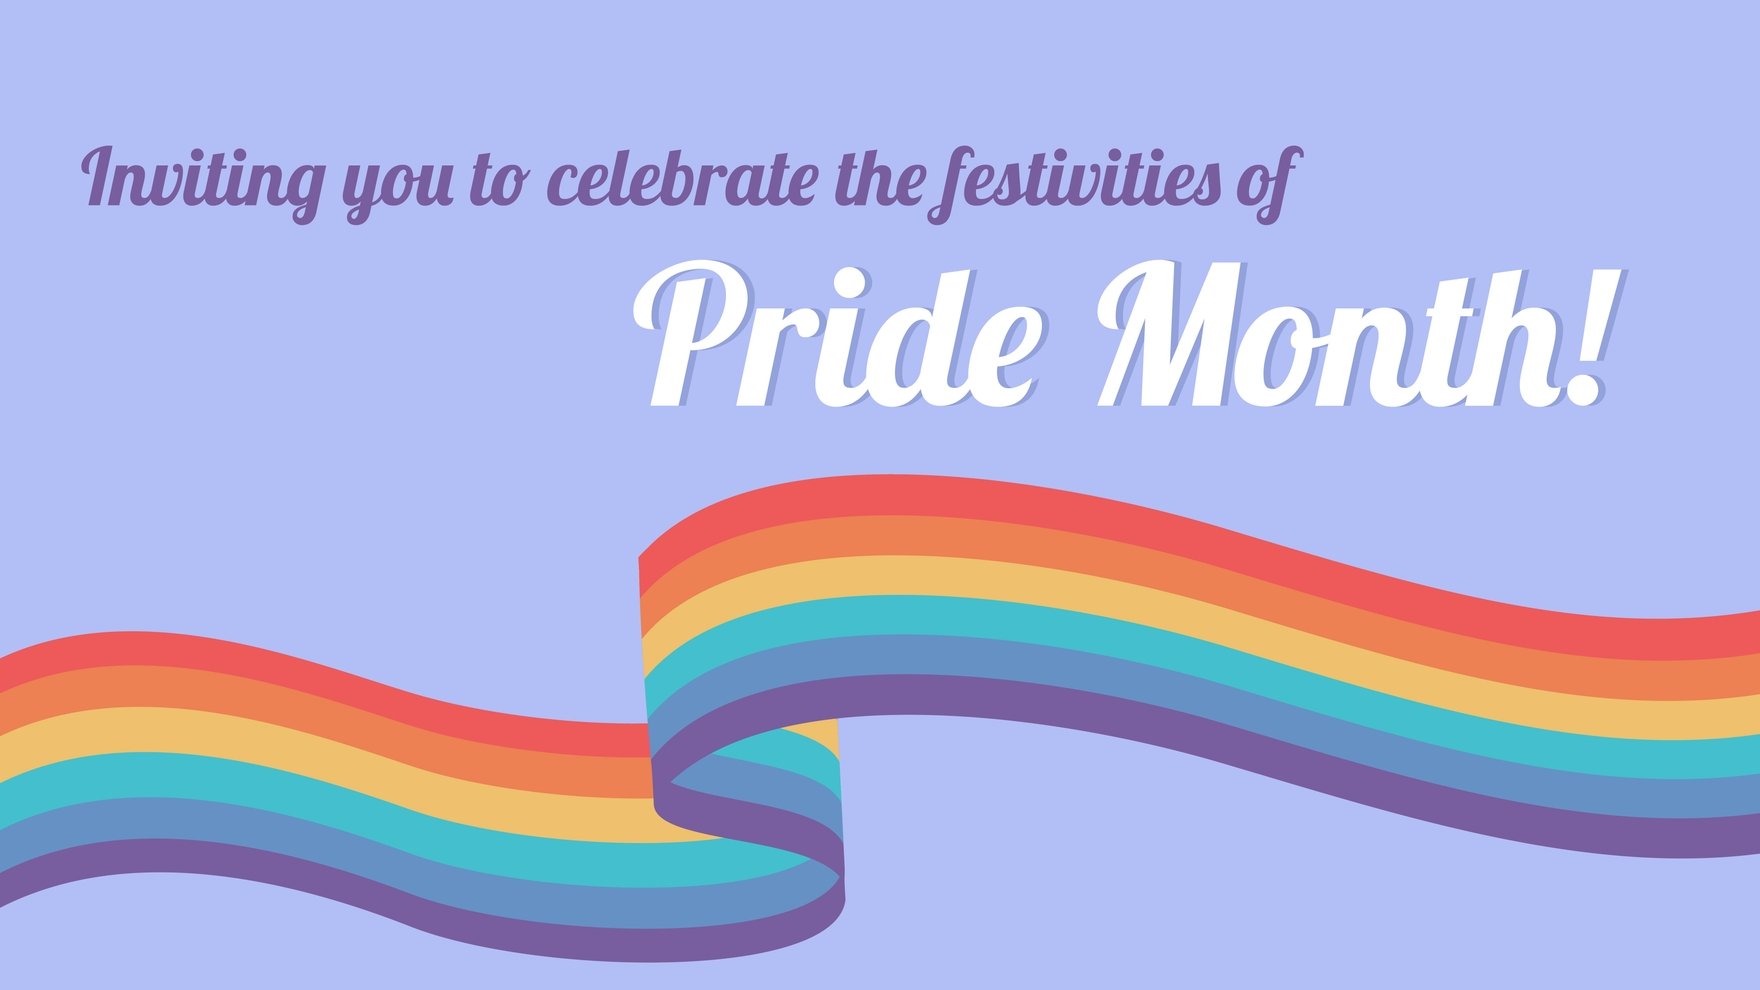 Pride Month Invitation Background in PDF, Illustrator, PSD, EPS, SVG, JPG, PNG